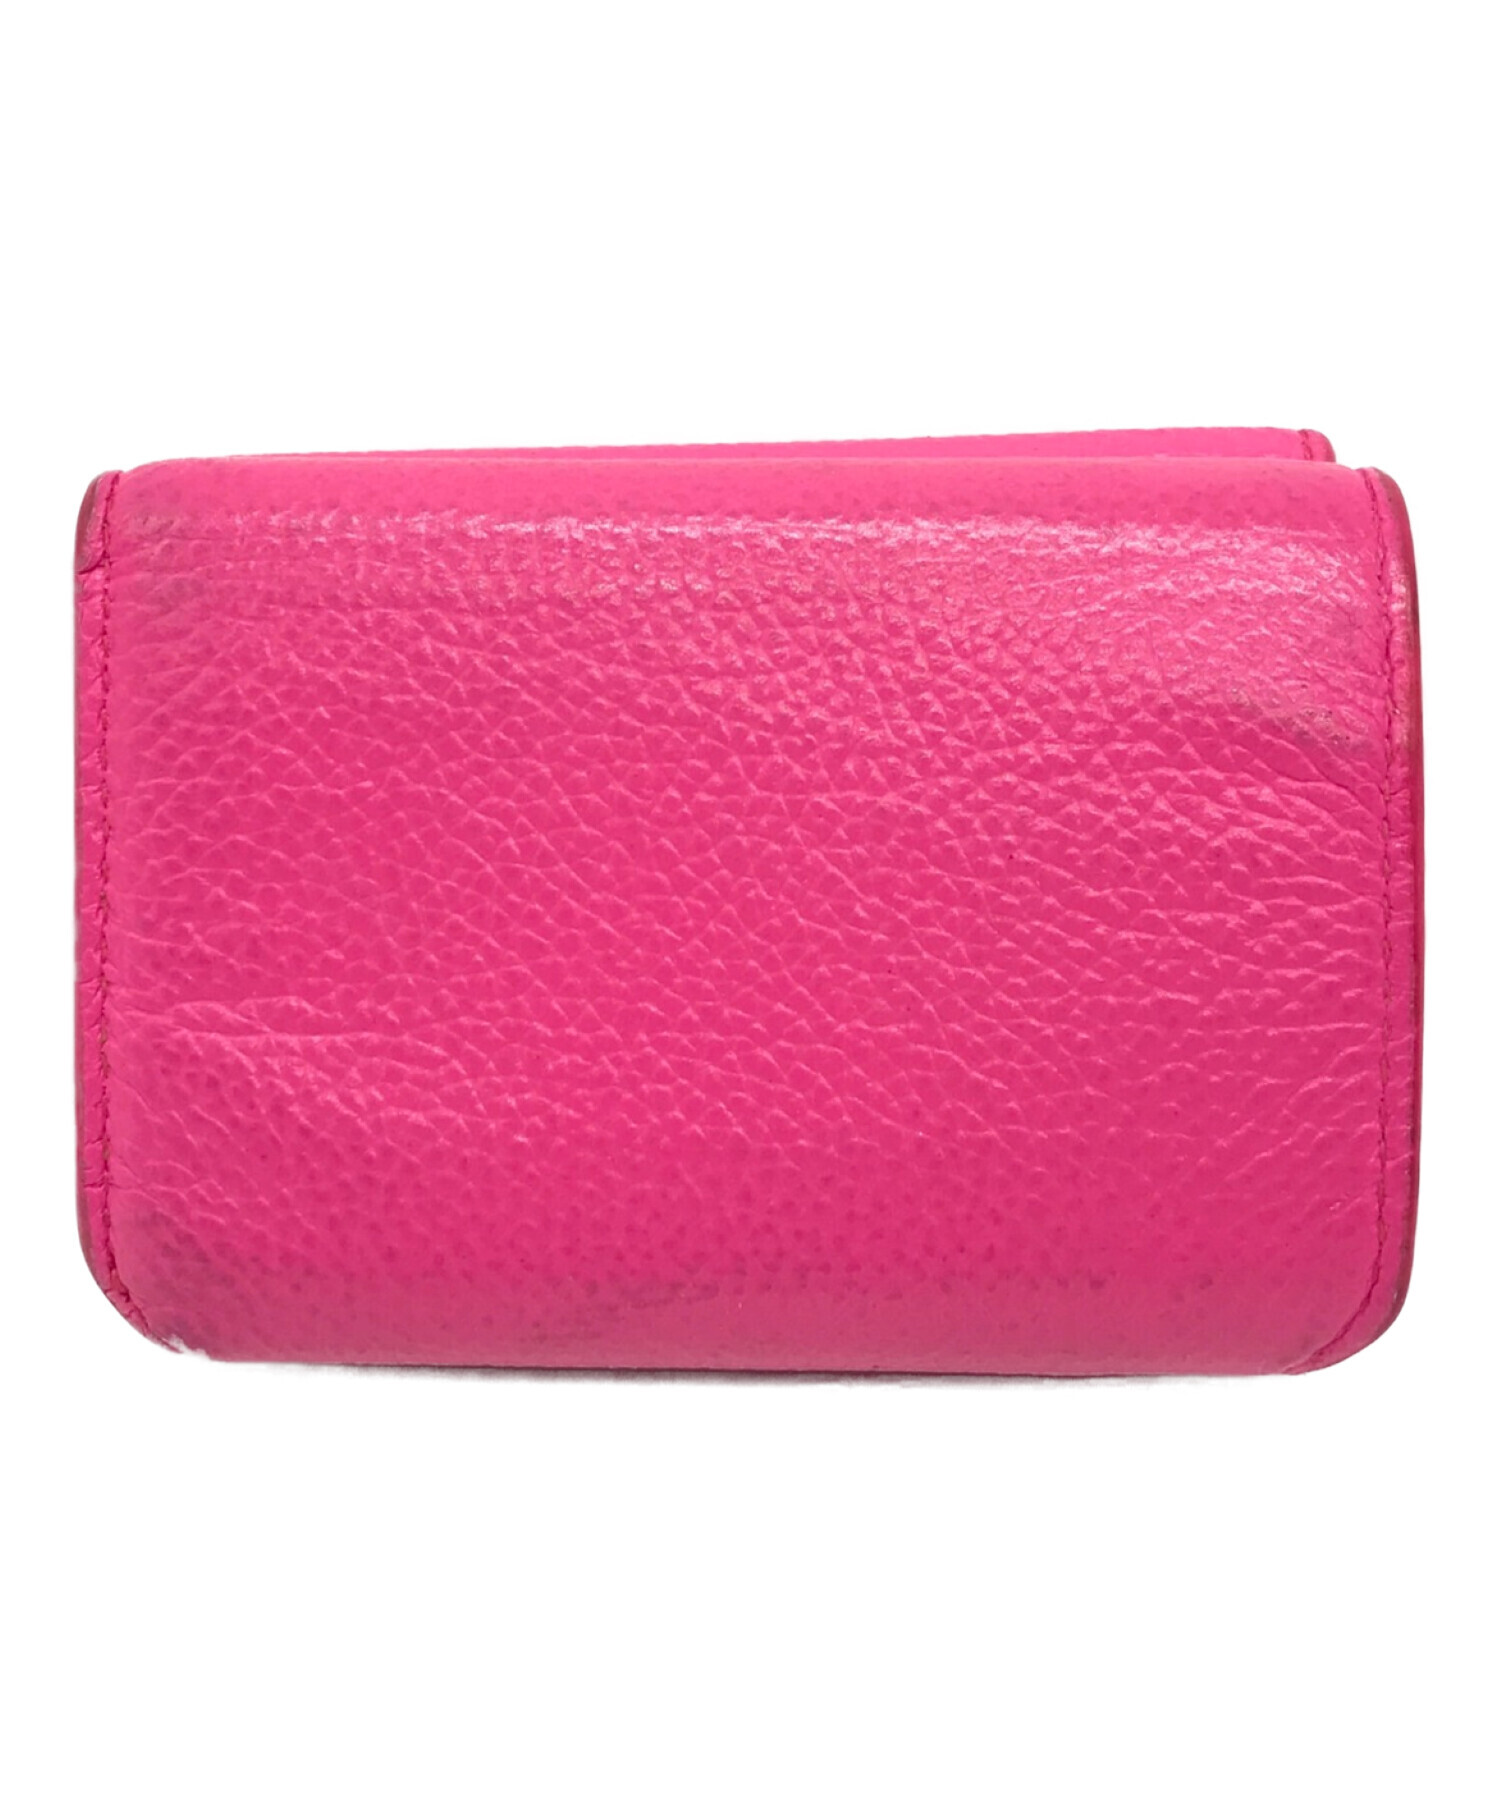 バレンシアガ ミニウォレット パッションピンクカラー - 折り財布